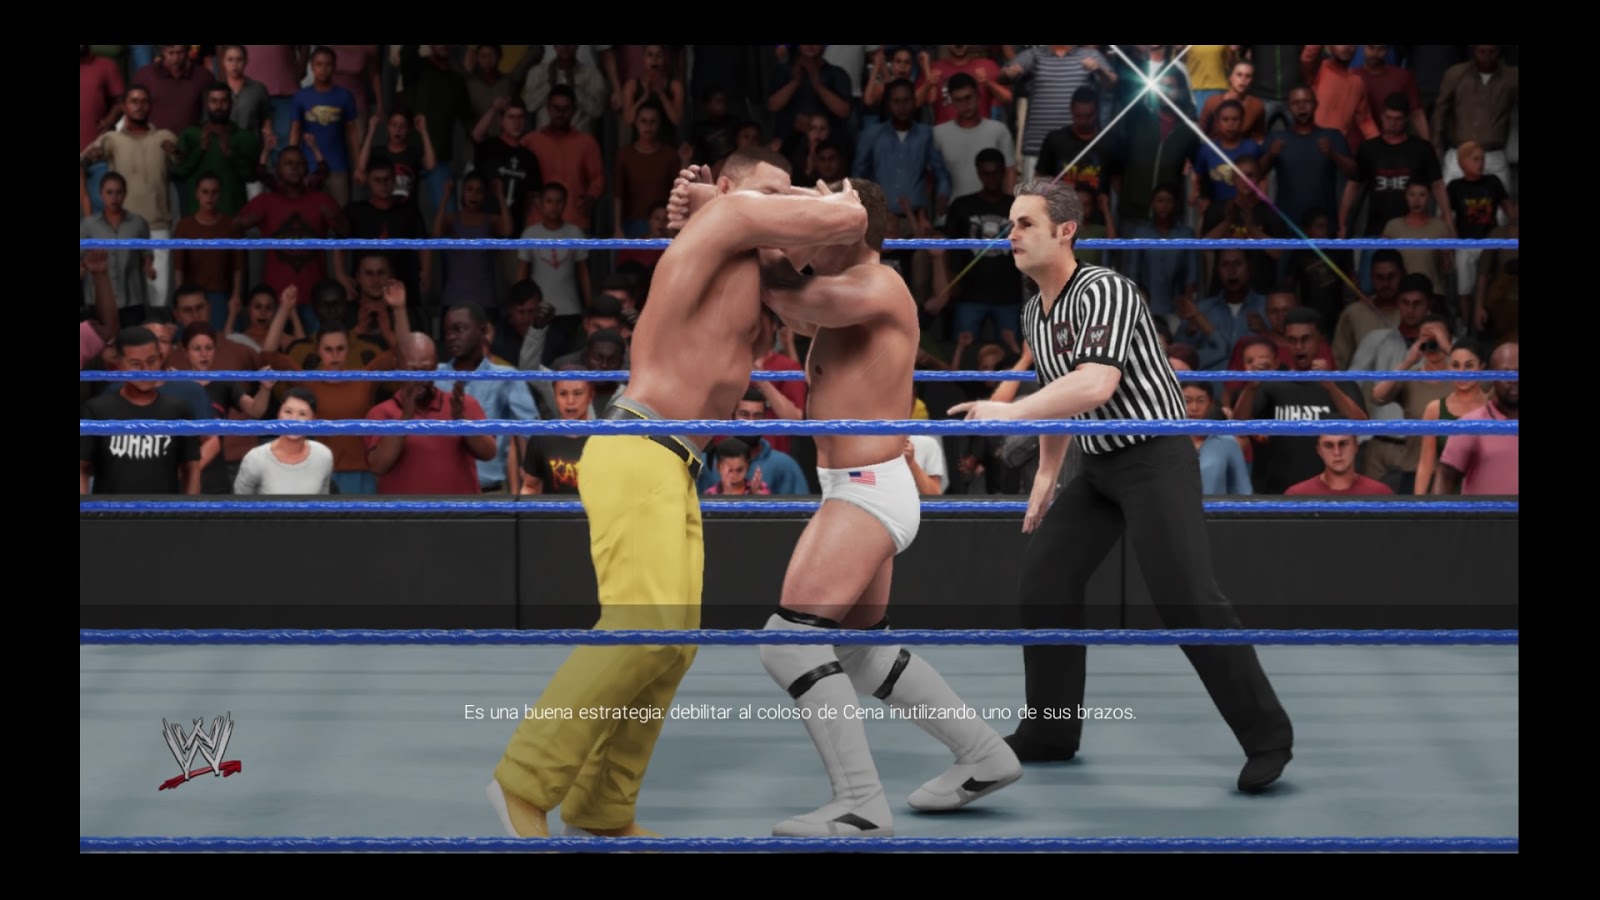 El primer enfrentamiento de Daniel Bryan será contra el imponente John Cena